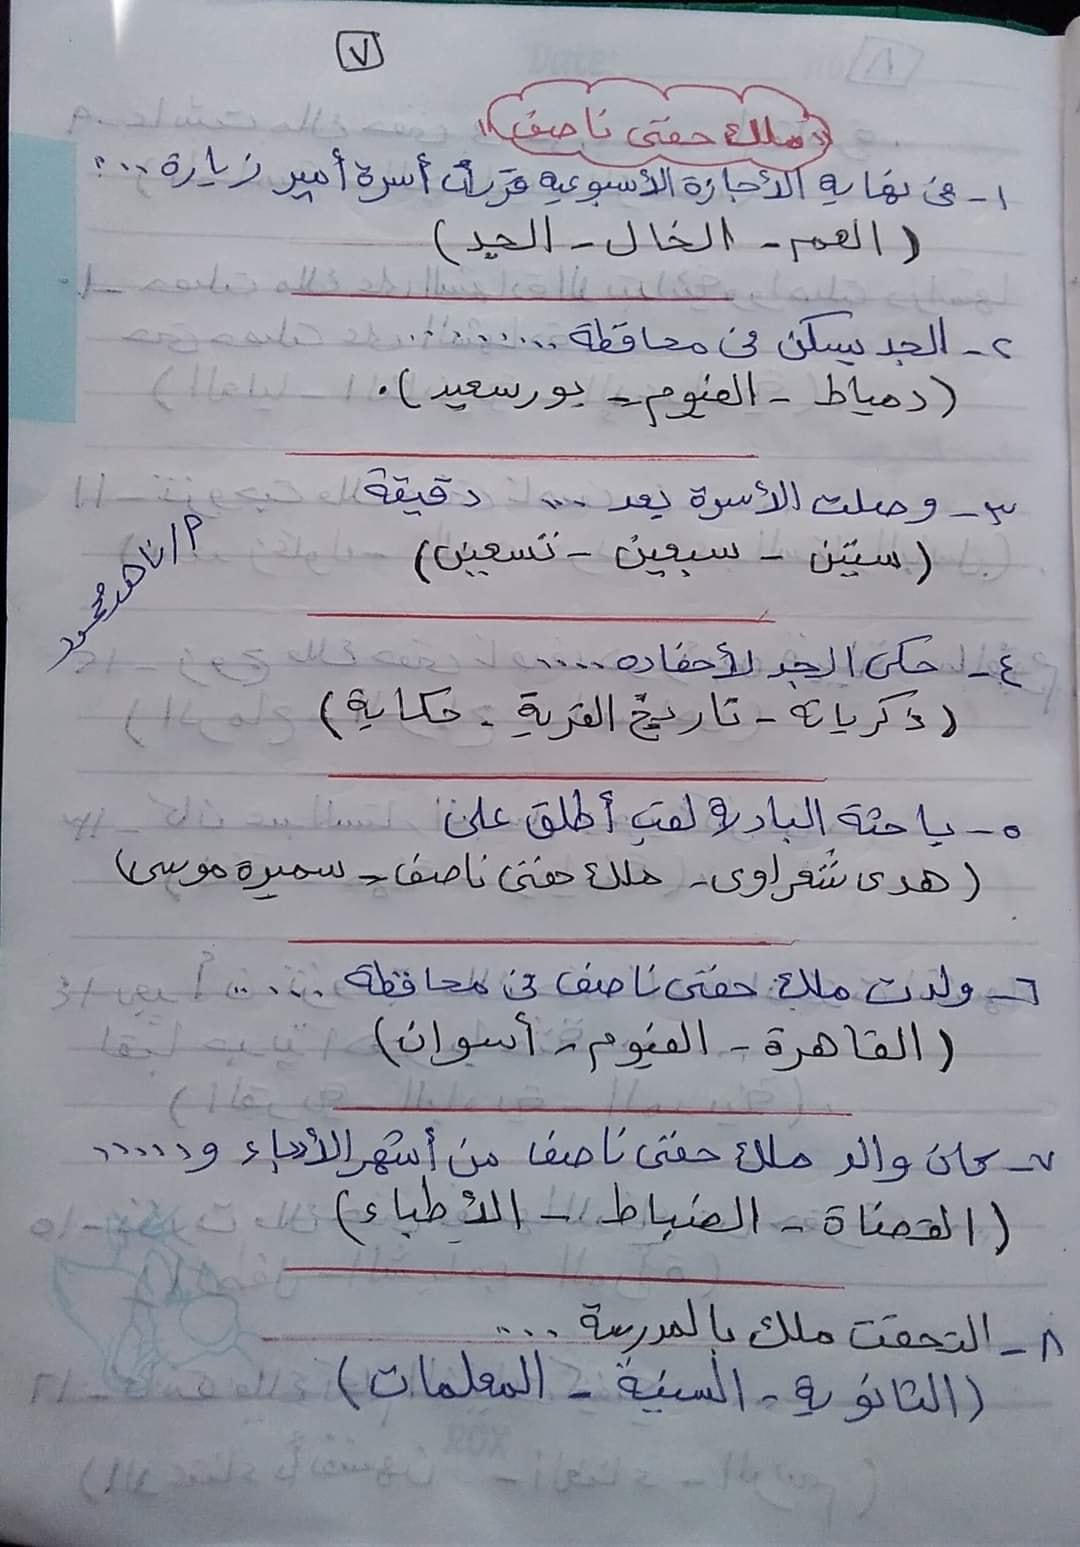  مراجعة منهج شهر مارس  لغة عربية (اختيار من متعدد) بالاجابات للصف الخامس الابتدائى الترم الثانى 2021 7